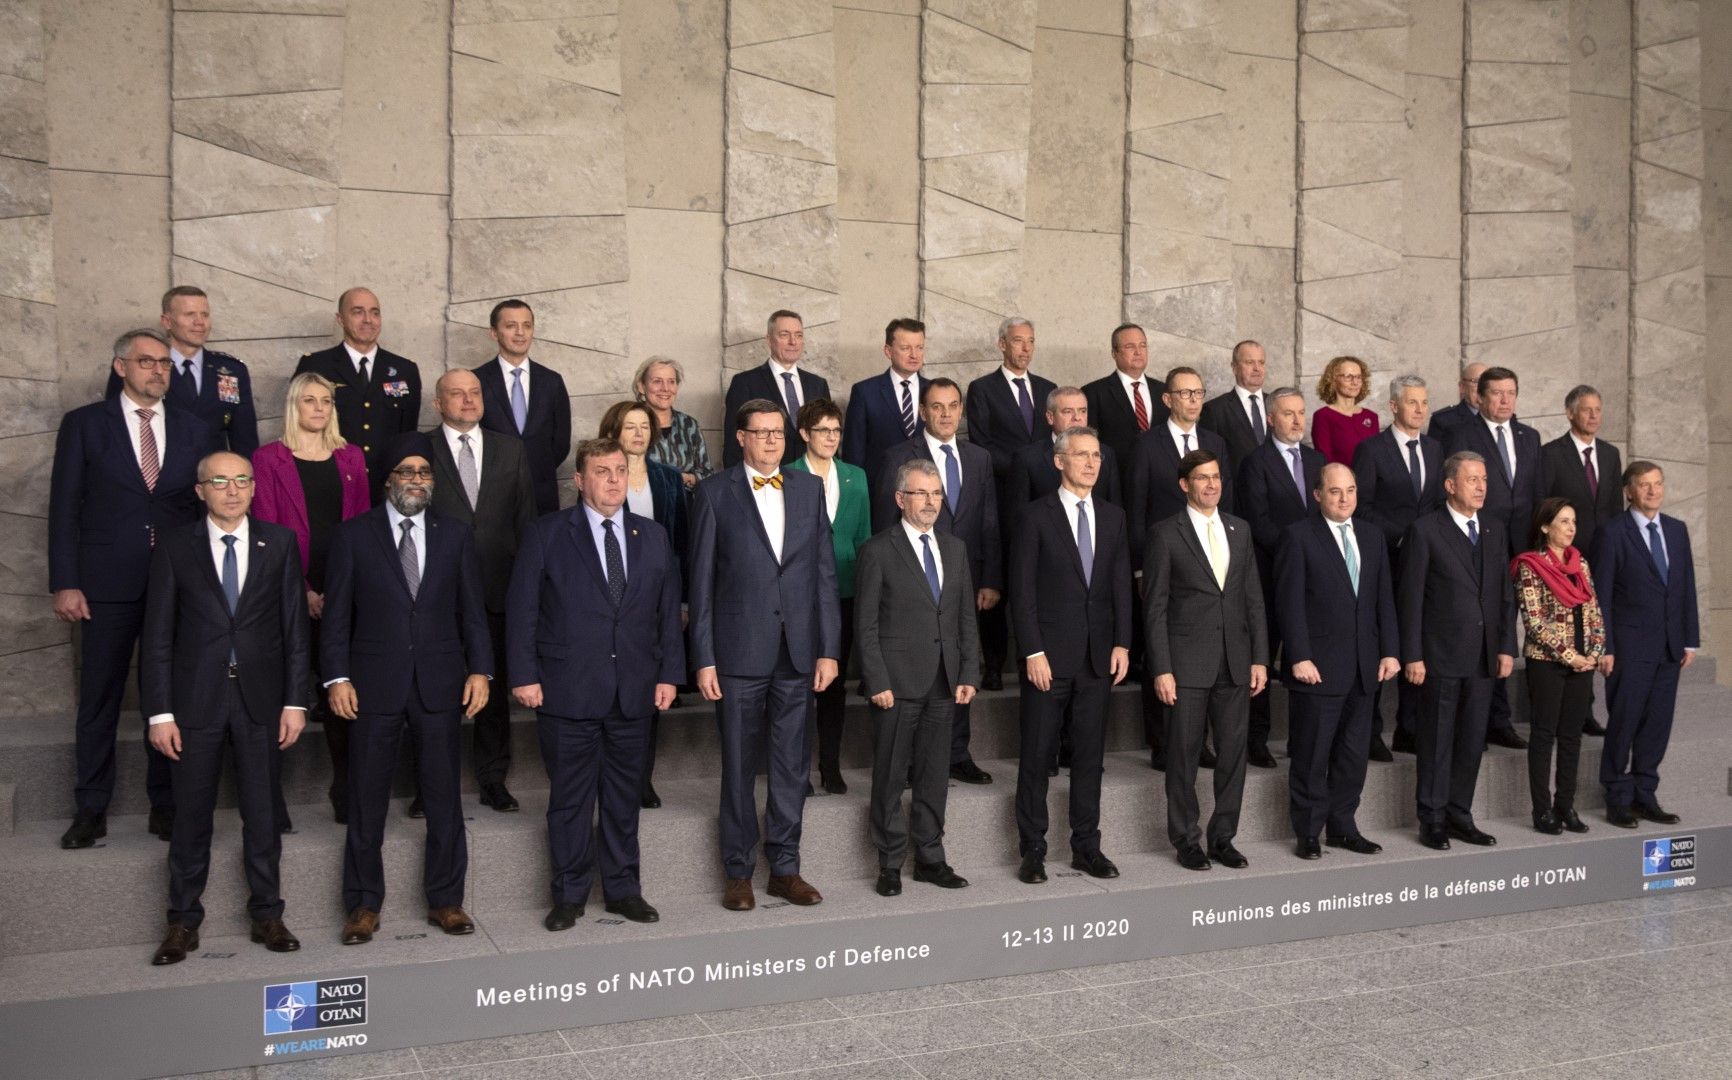 Министрите на отбраната на страните членки на НАТО се събраха на заседание в централата на алианса, 12 февруари 2020. Българският министър Красимир Каракачанов е третият отляво на първия ред